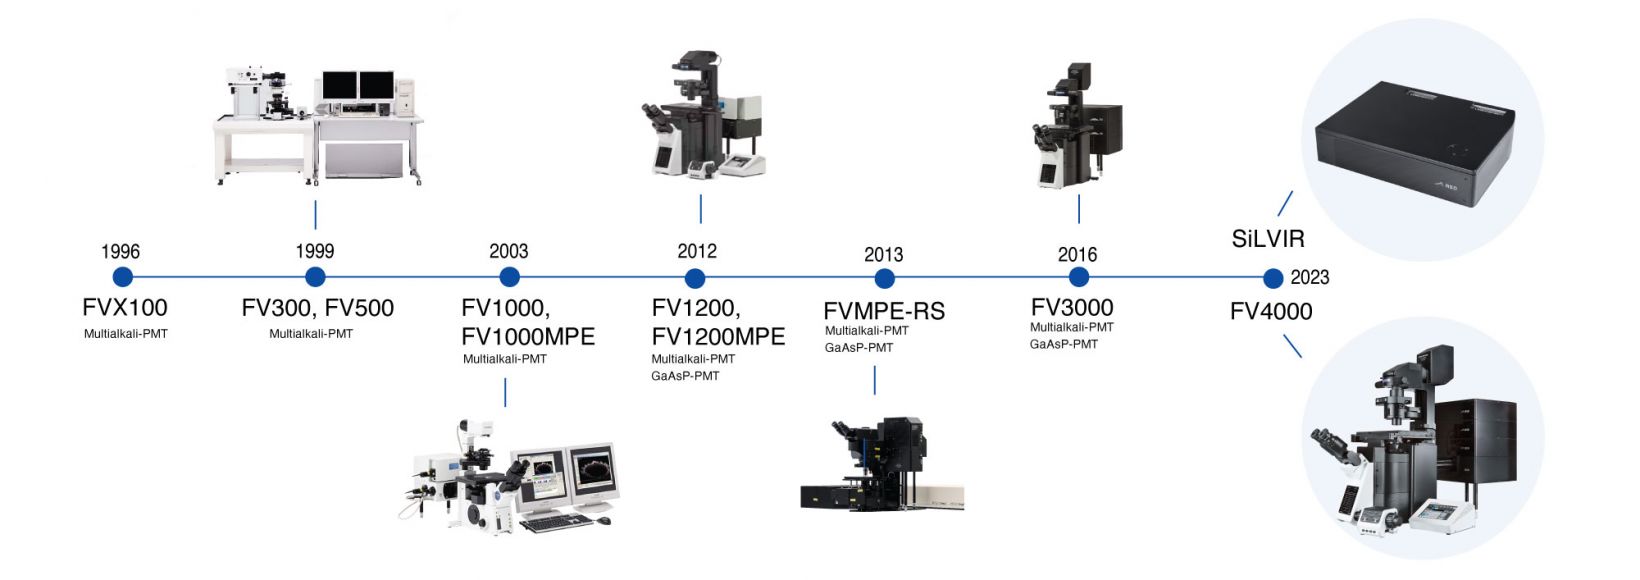 Chronologie des développements de la microscopie confocale, tout d’abord chez Olympus, puis chez Evident, qui ont abouti à la création du microscope confocal laser FV4000.